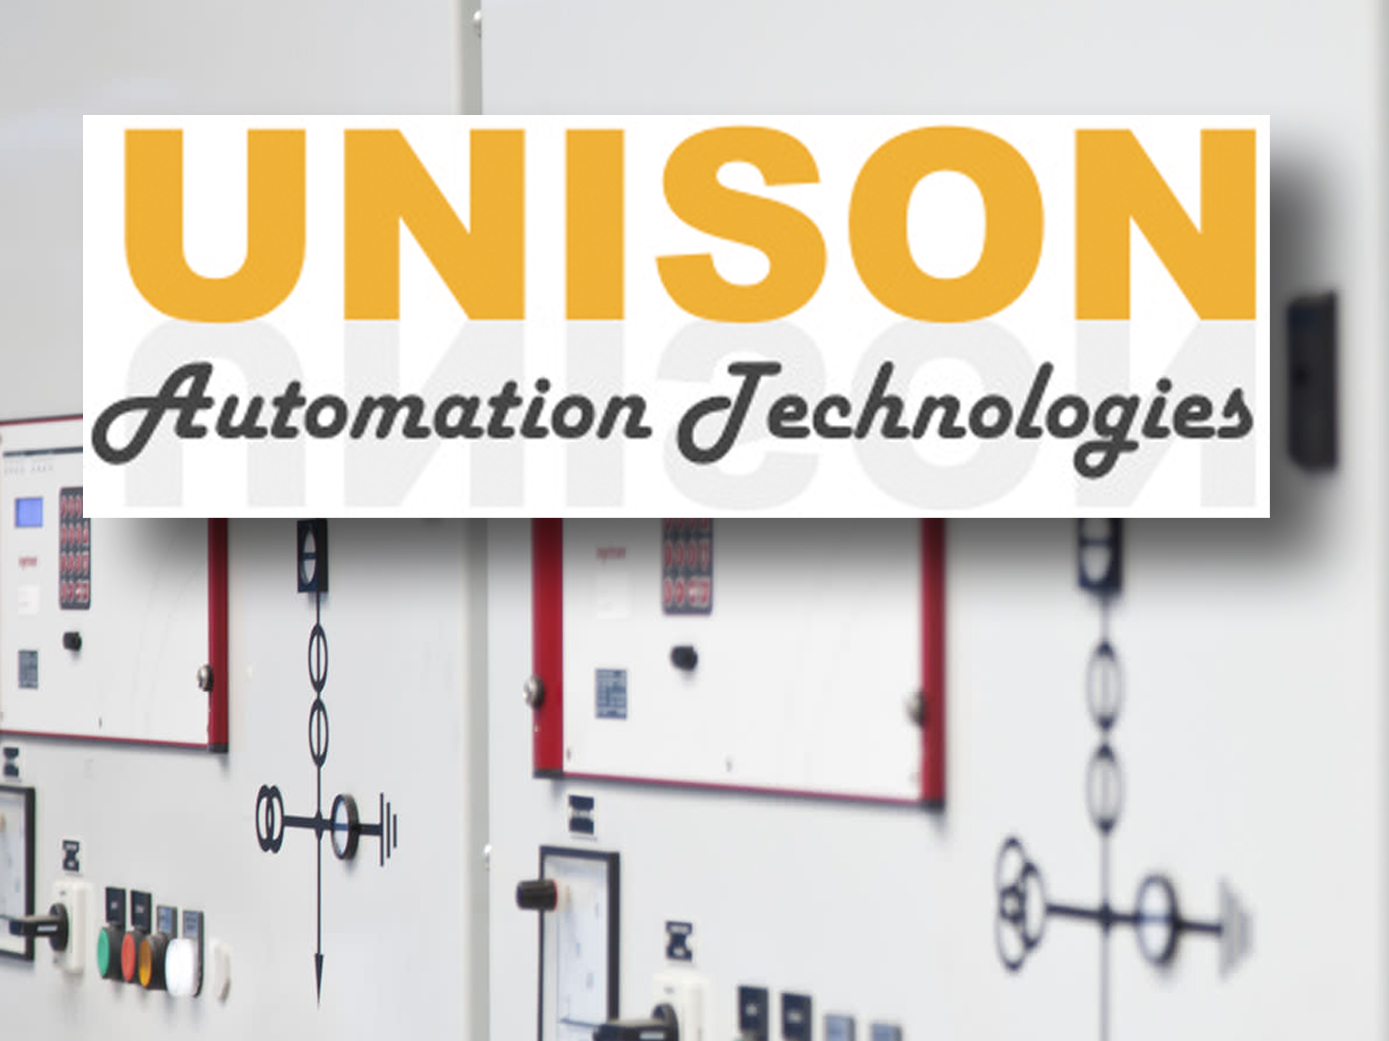 About Unison Automation Tech. Pvt. Ltd.